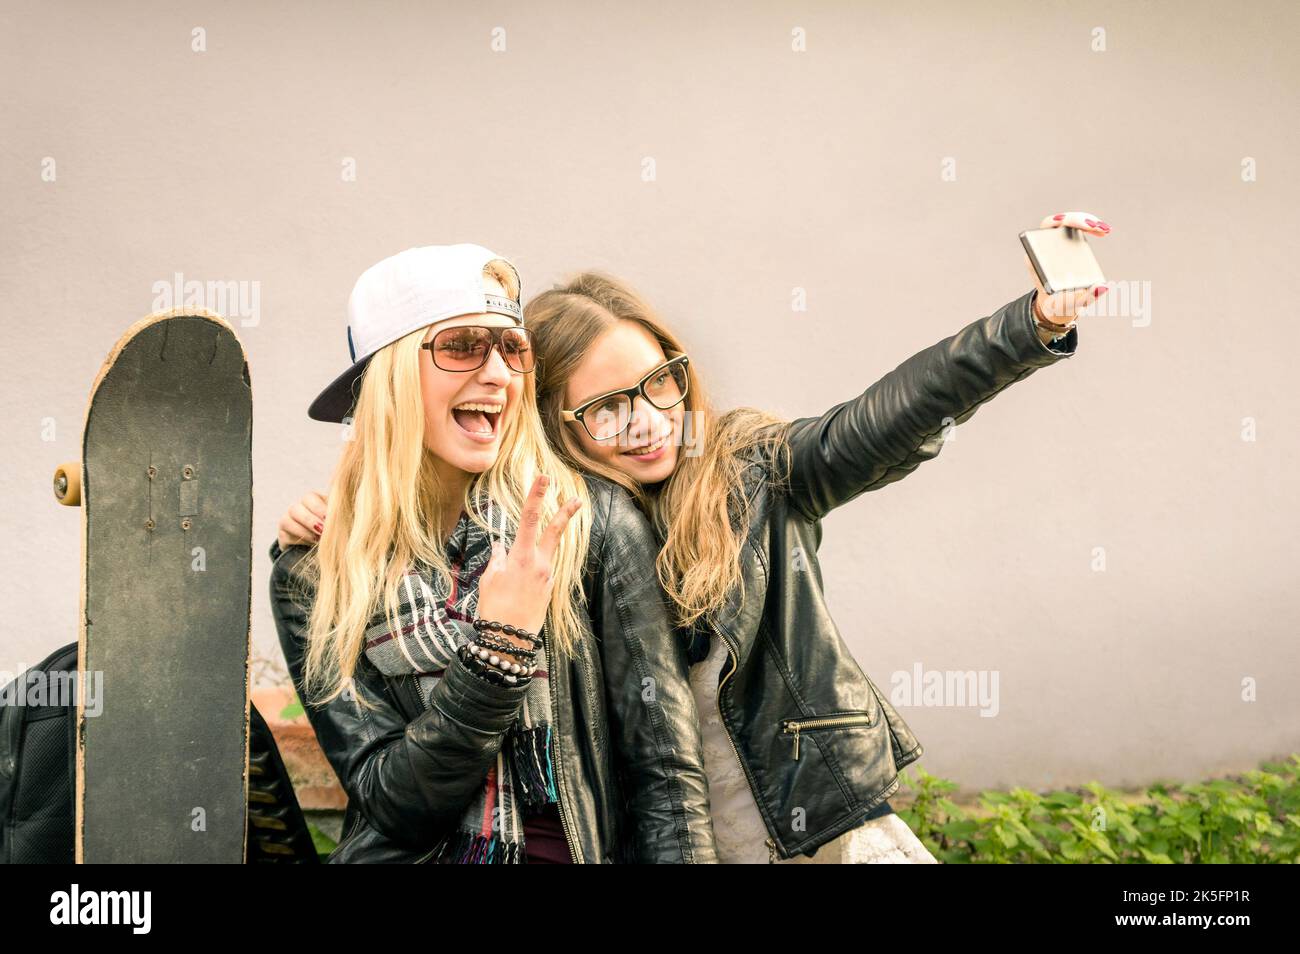 Hipster-Freundinnen machen ein Selfie im urbanen Stadtkontext - Konzept der Freundschaft und des Spaßes mit neuen Trends und Technologie - Beste Freundinnen verewigen t Stockfoto